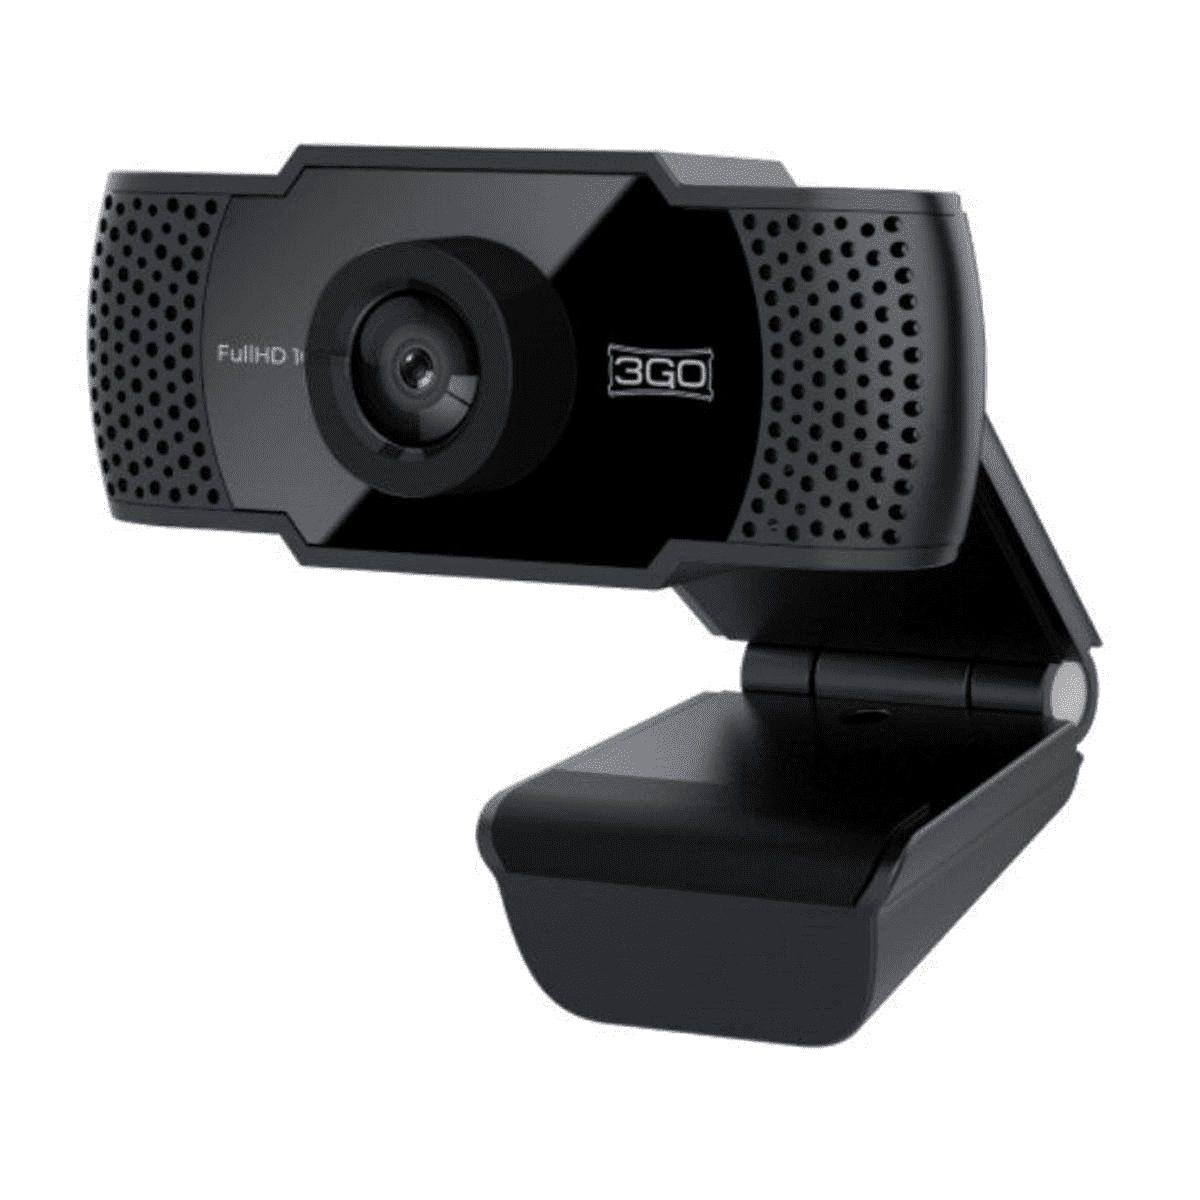 3Go View Webcam Full HD 1080p USB 2.0 - Microfono Integrado - Reduccion de Ruido y Eco - Color Negro